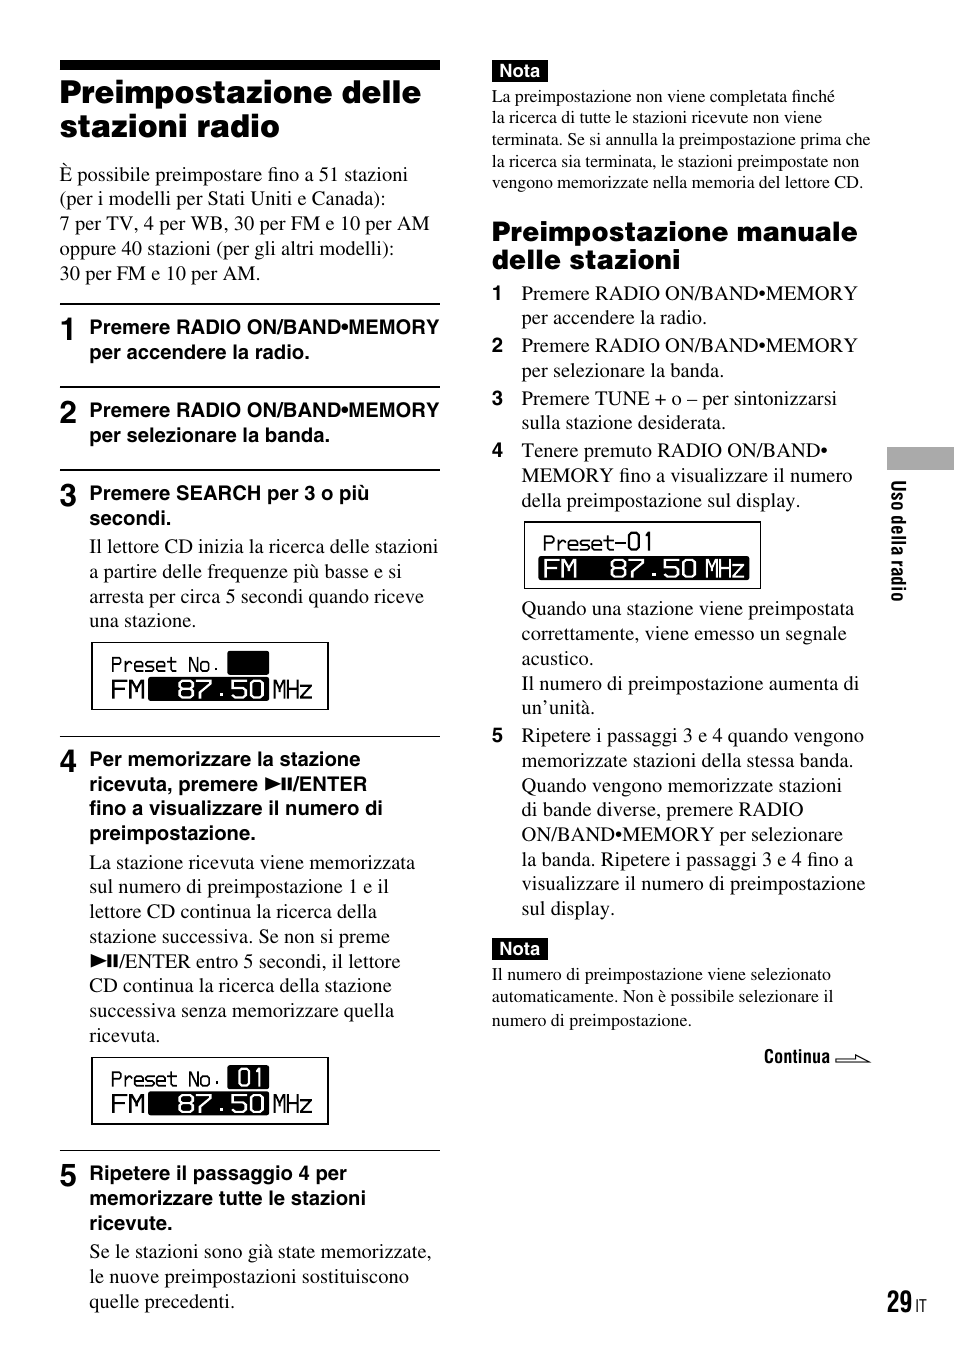 Preimpostazione delle stazioni radio, Preimpostazione manuale delle stazioni | Sony D-NF421 Benutzerhandbuch | Seite 101 / 112